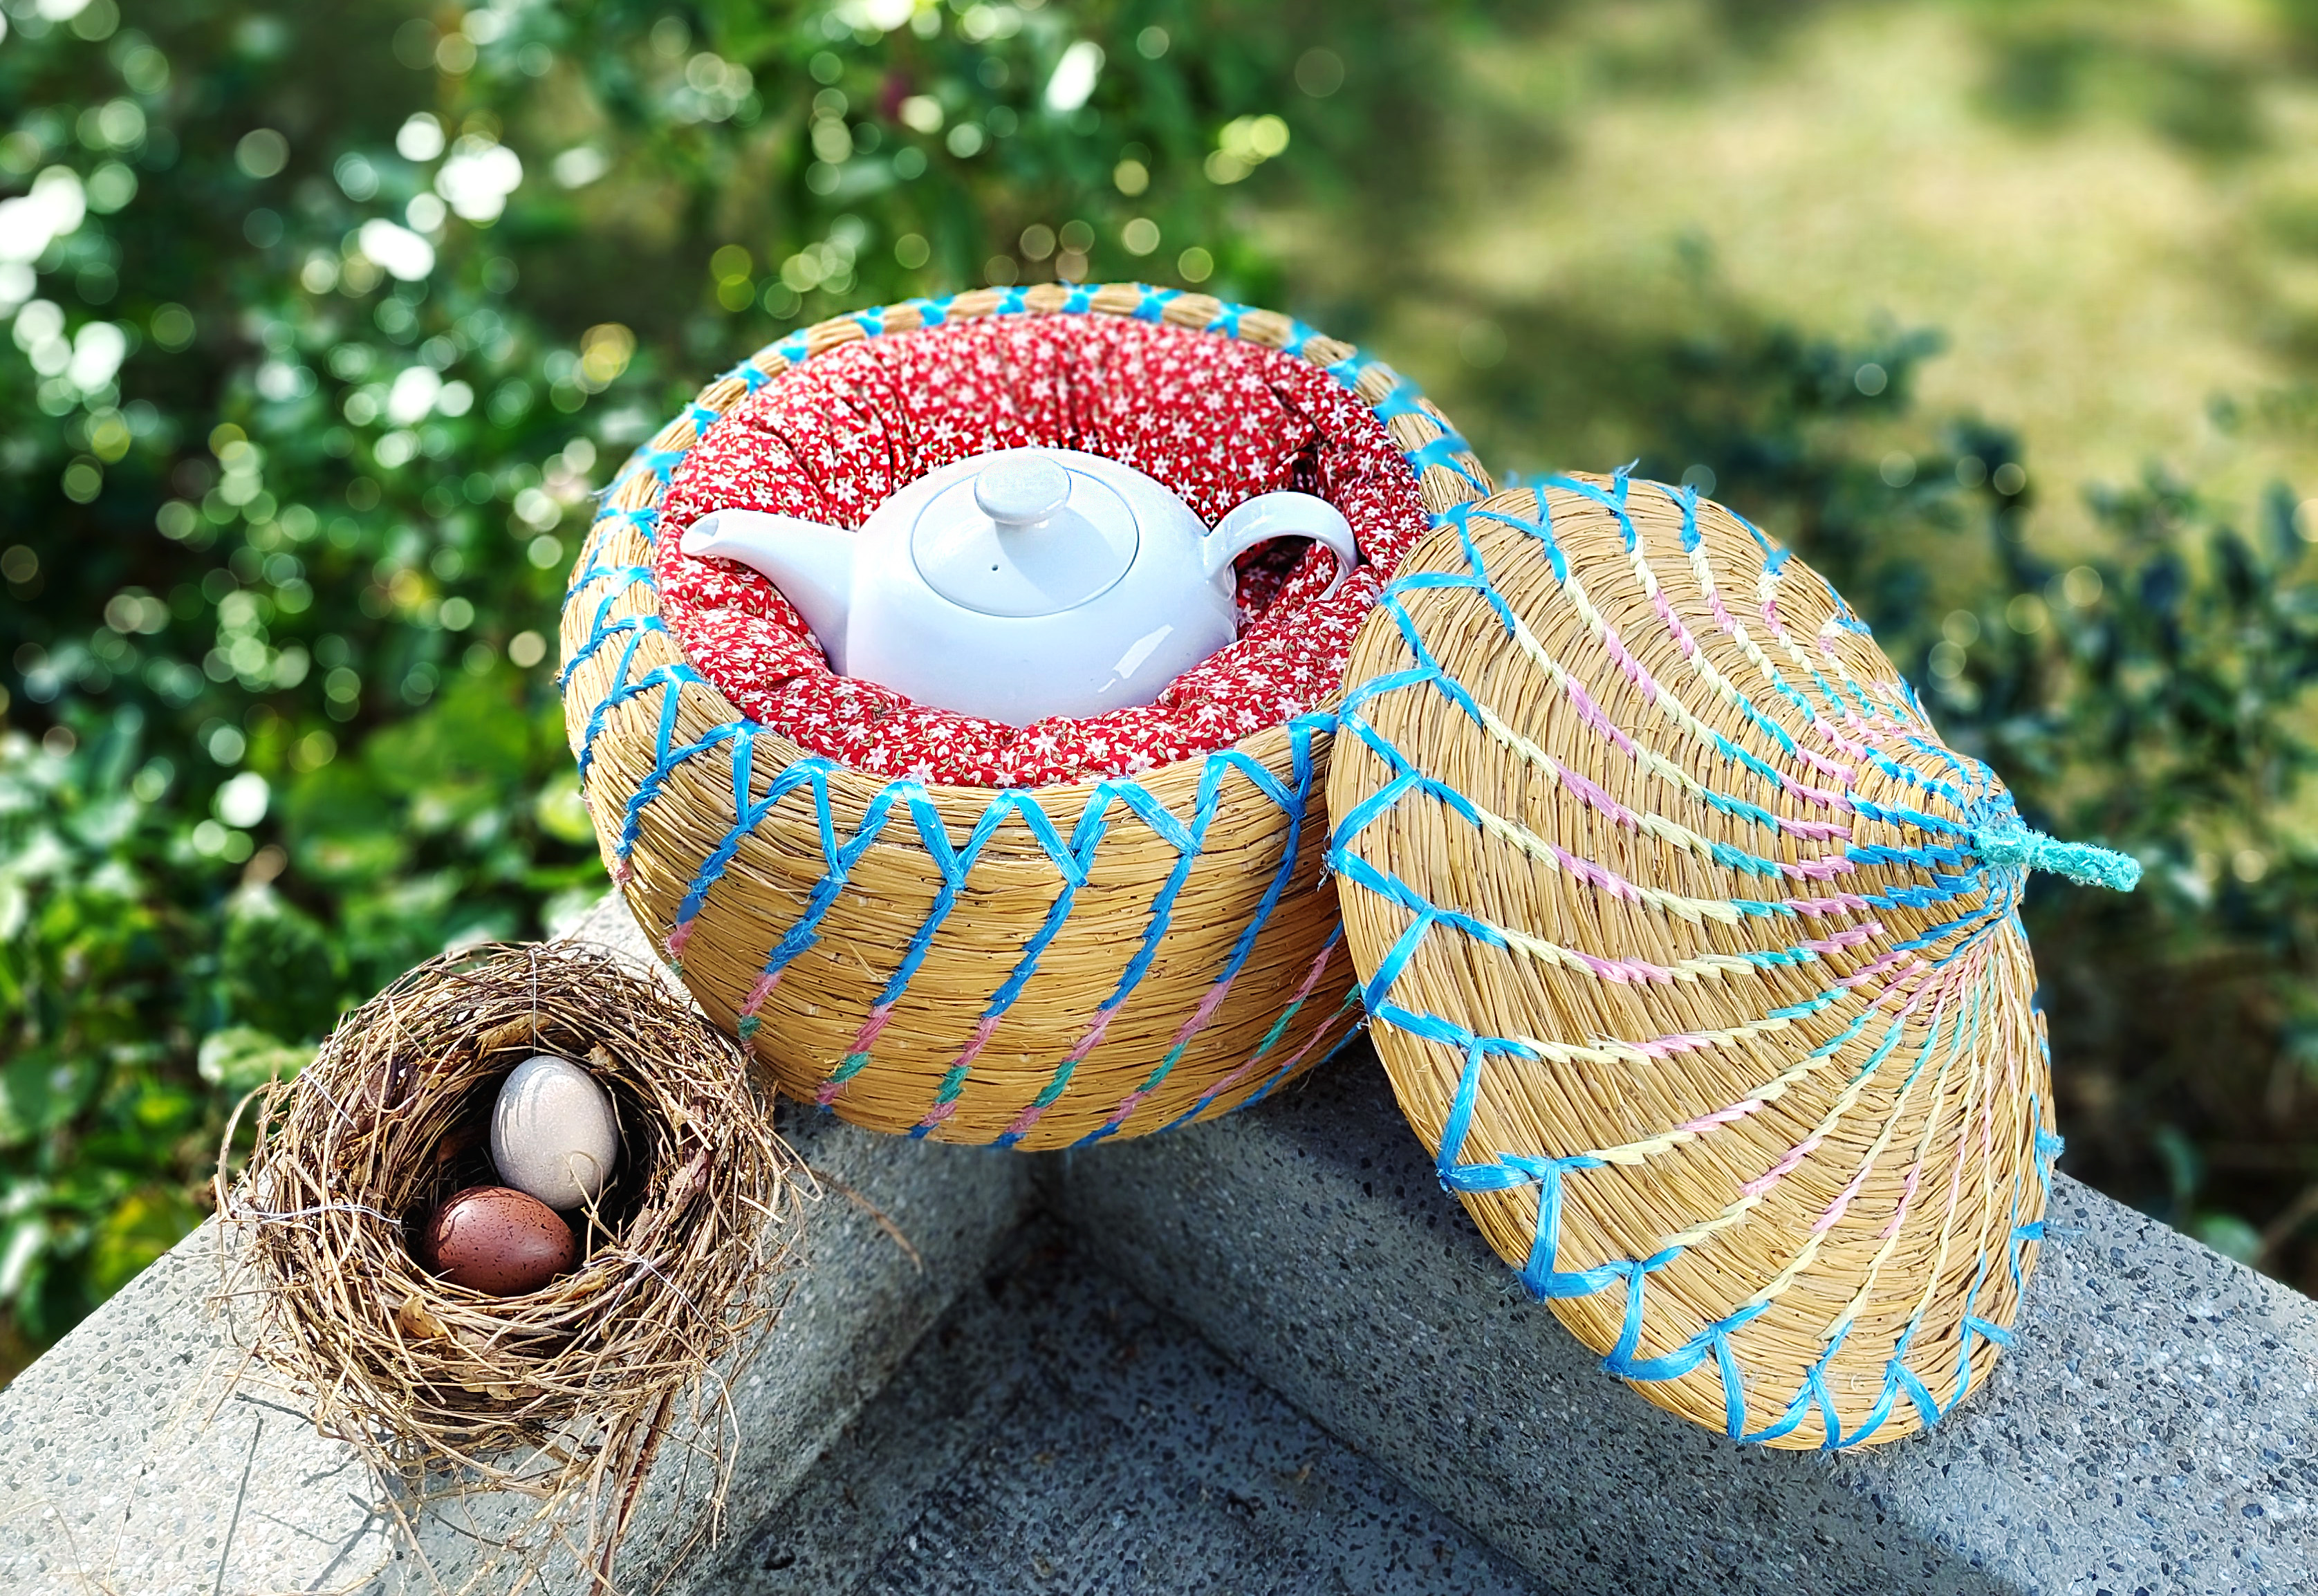 「茶壽」是以稻草編織的茶水保溫器，設計概念來自於能為鳥蛋保溫的「鳥巢」